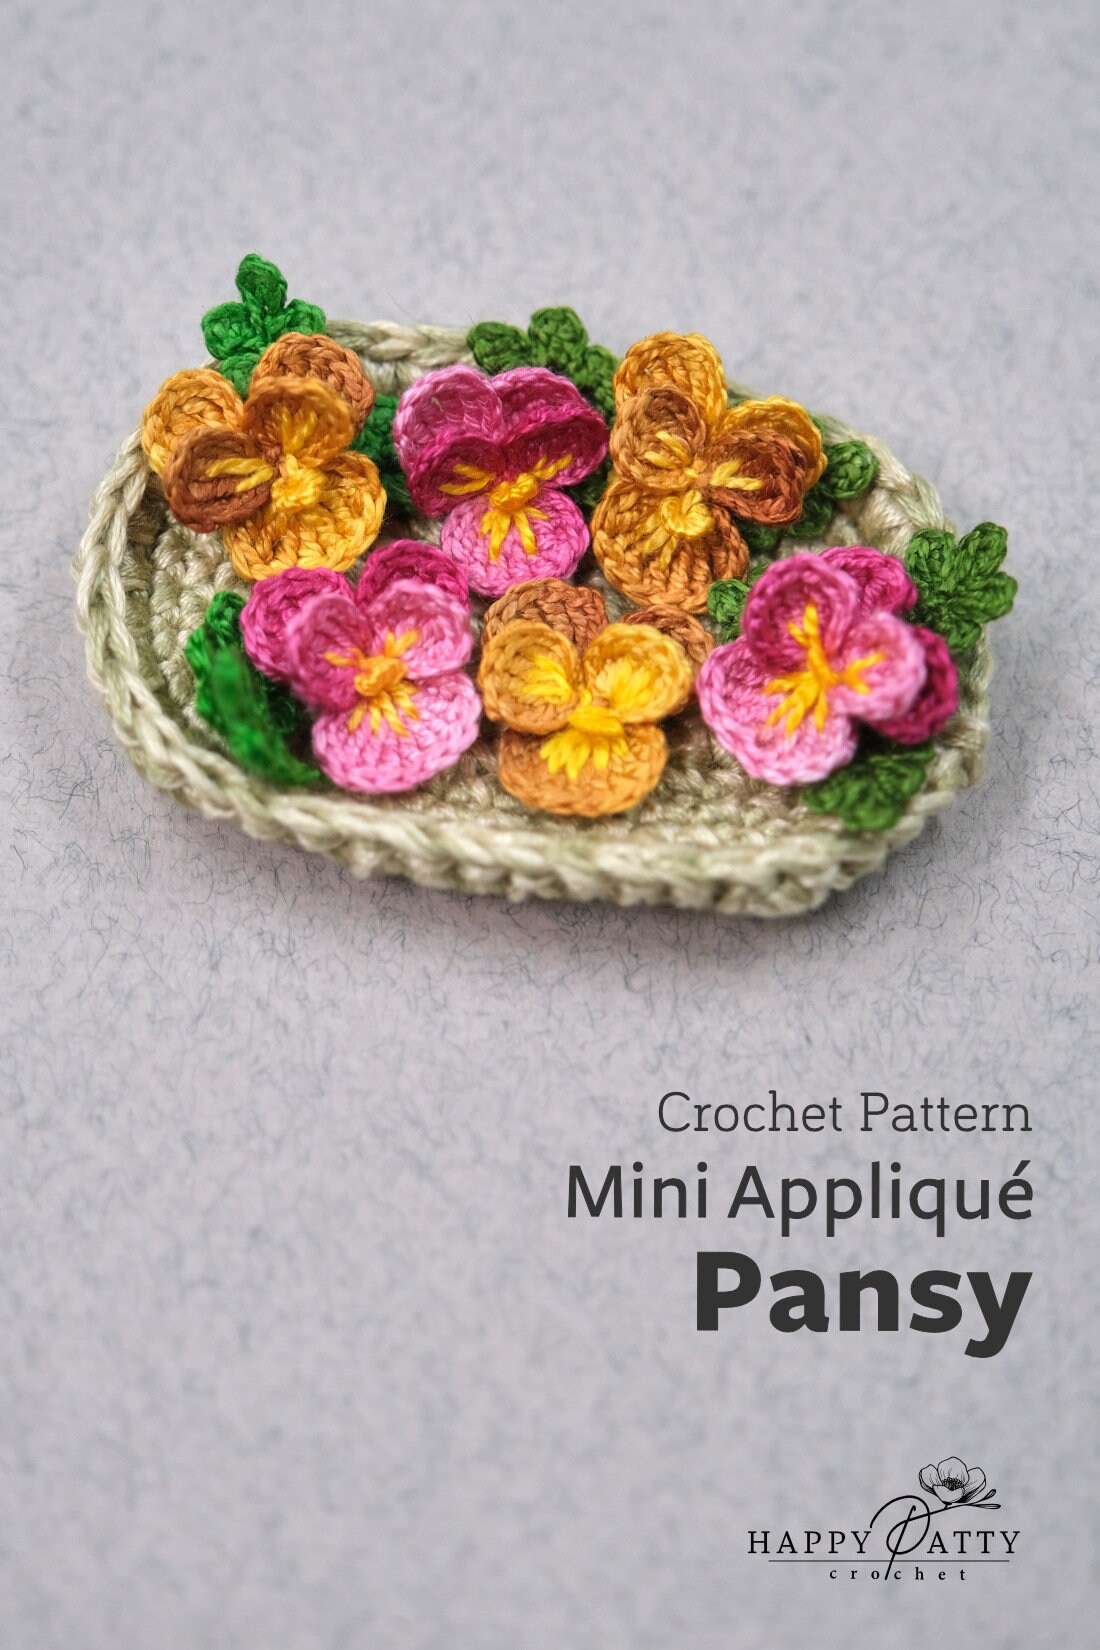 Crochet Mini Pansy Applique Pattern - Crochet Flower Pattern for a Miniature Pansy Applique